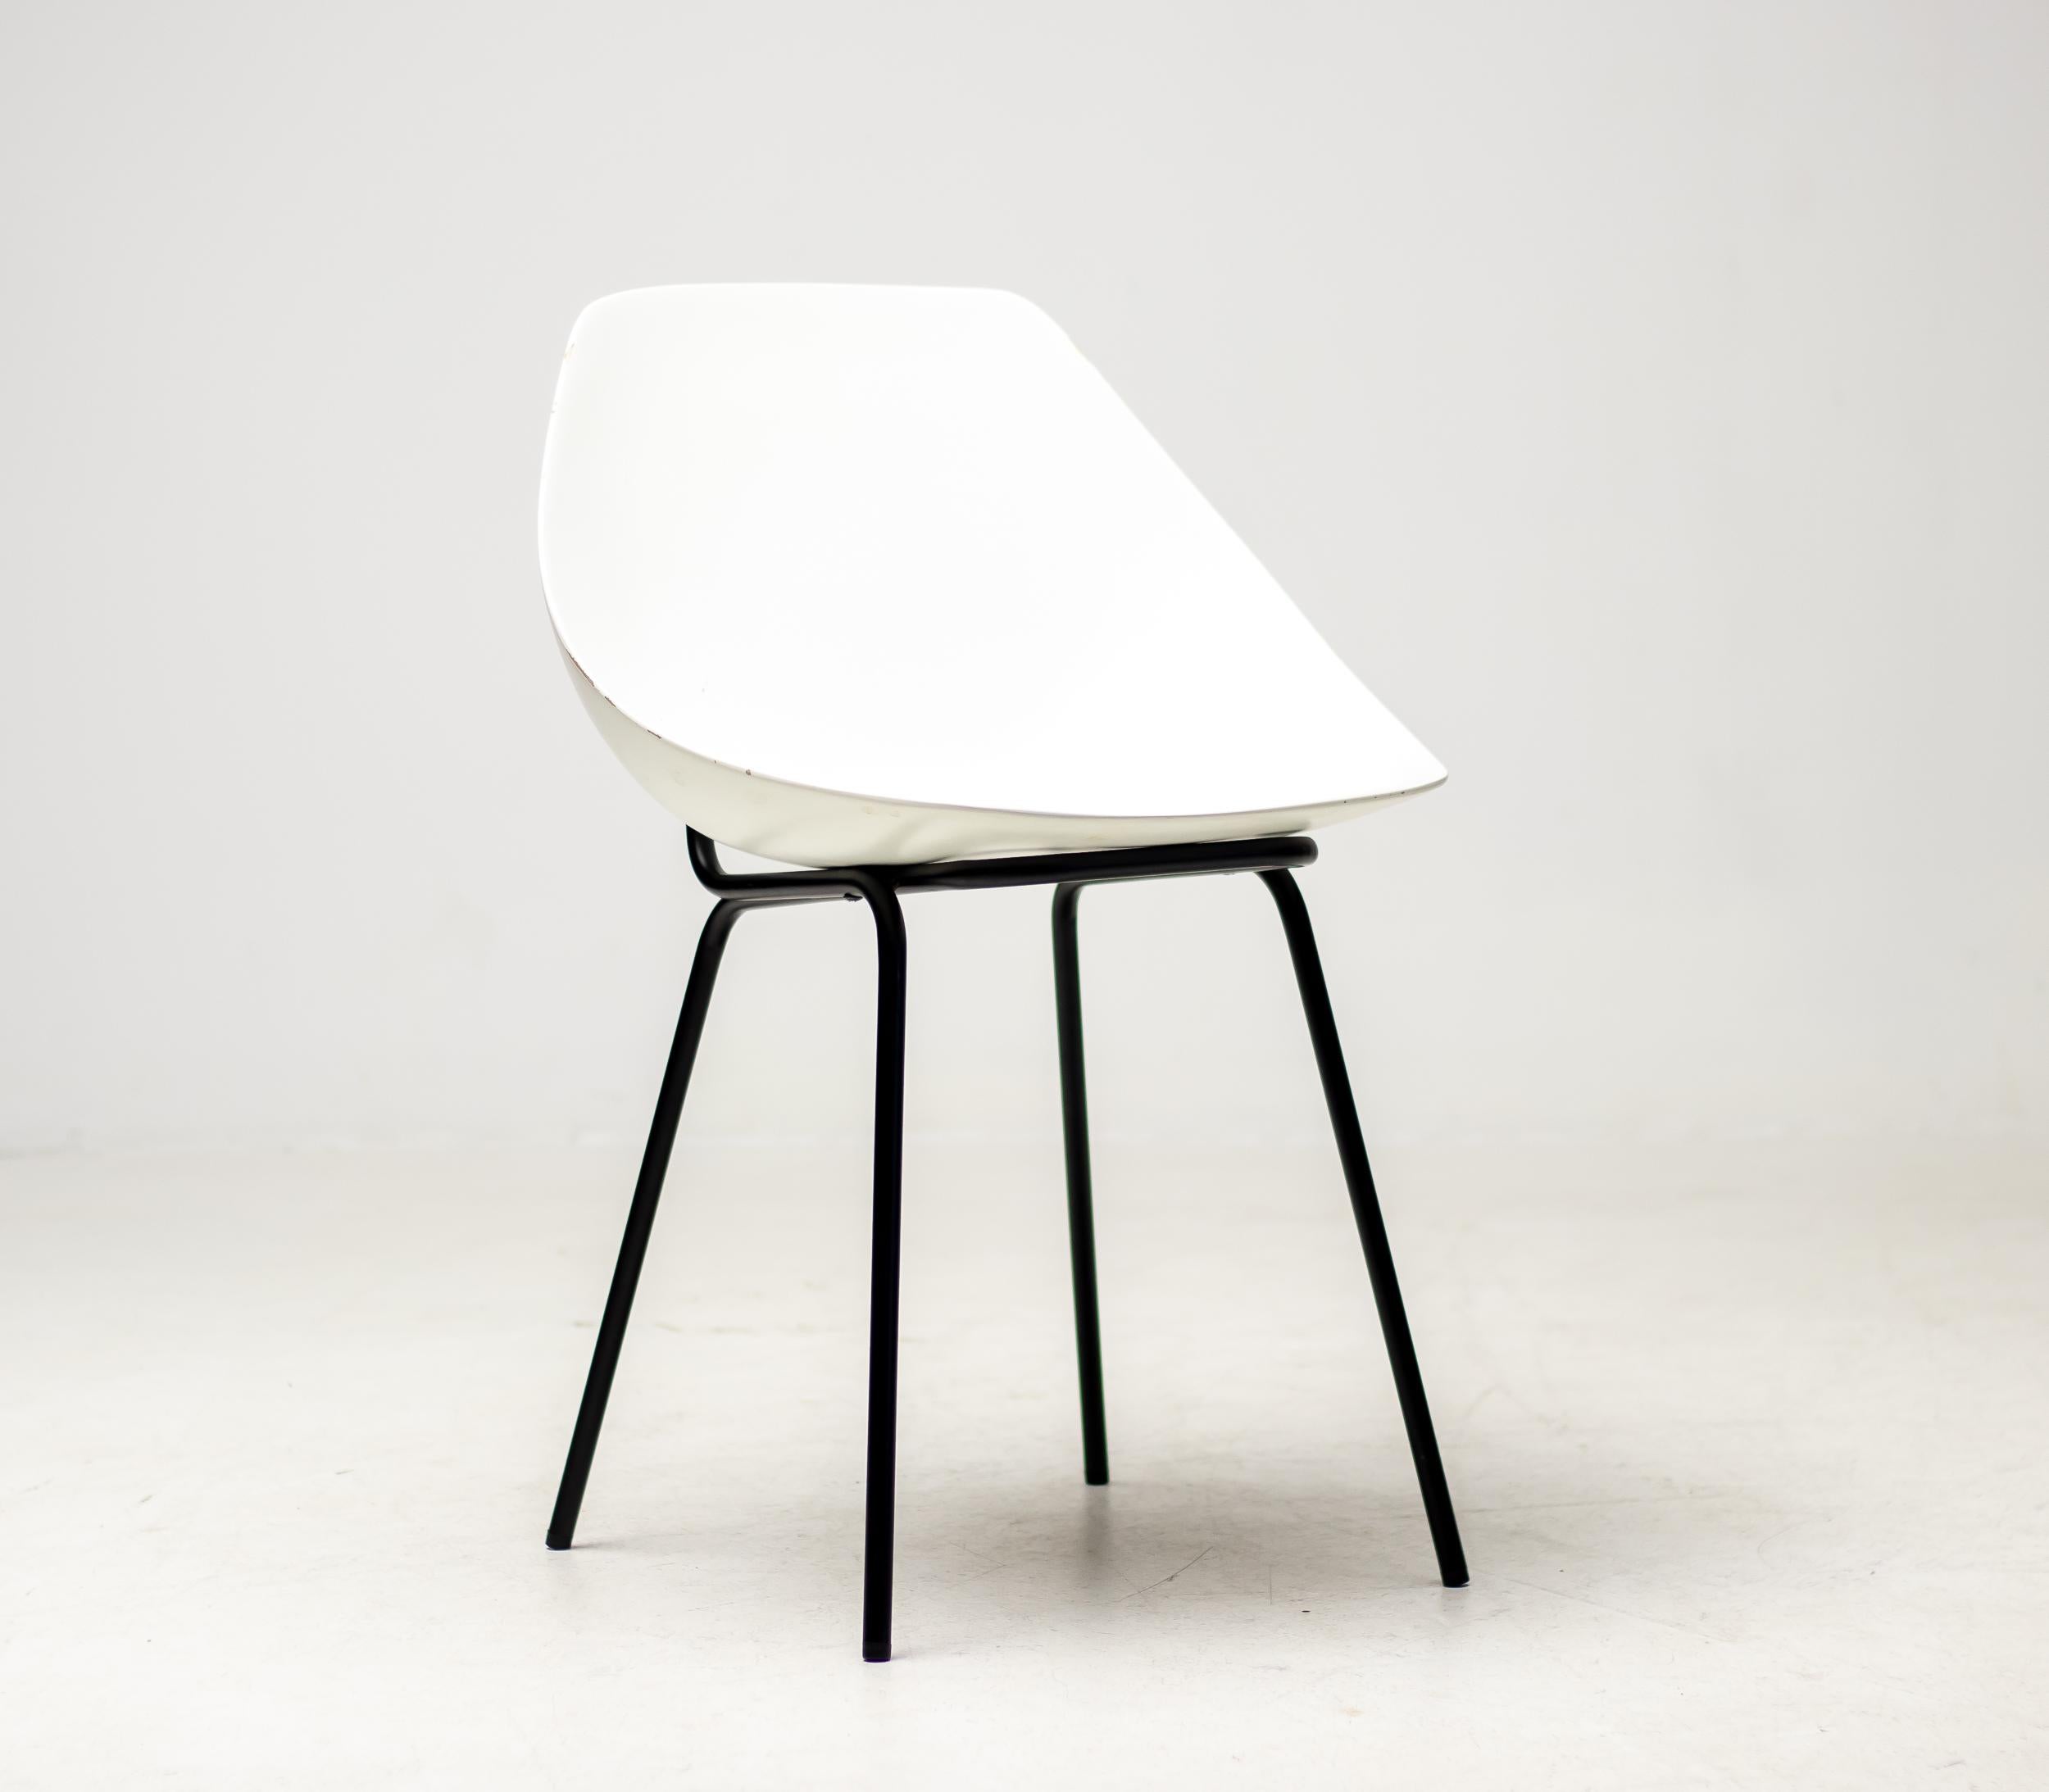 Chaises à coque en fibre de verre blanche conçues dans les années 1950 par Pierre Guariche.
Pendant une très courte période, la chaise Coquillage a été rééditée par Maisons du Monde, France.
Chaque chaise porte la signature du designer.
Prix à